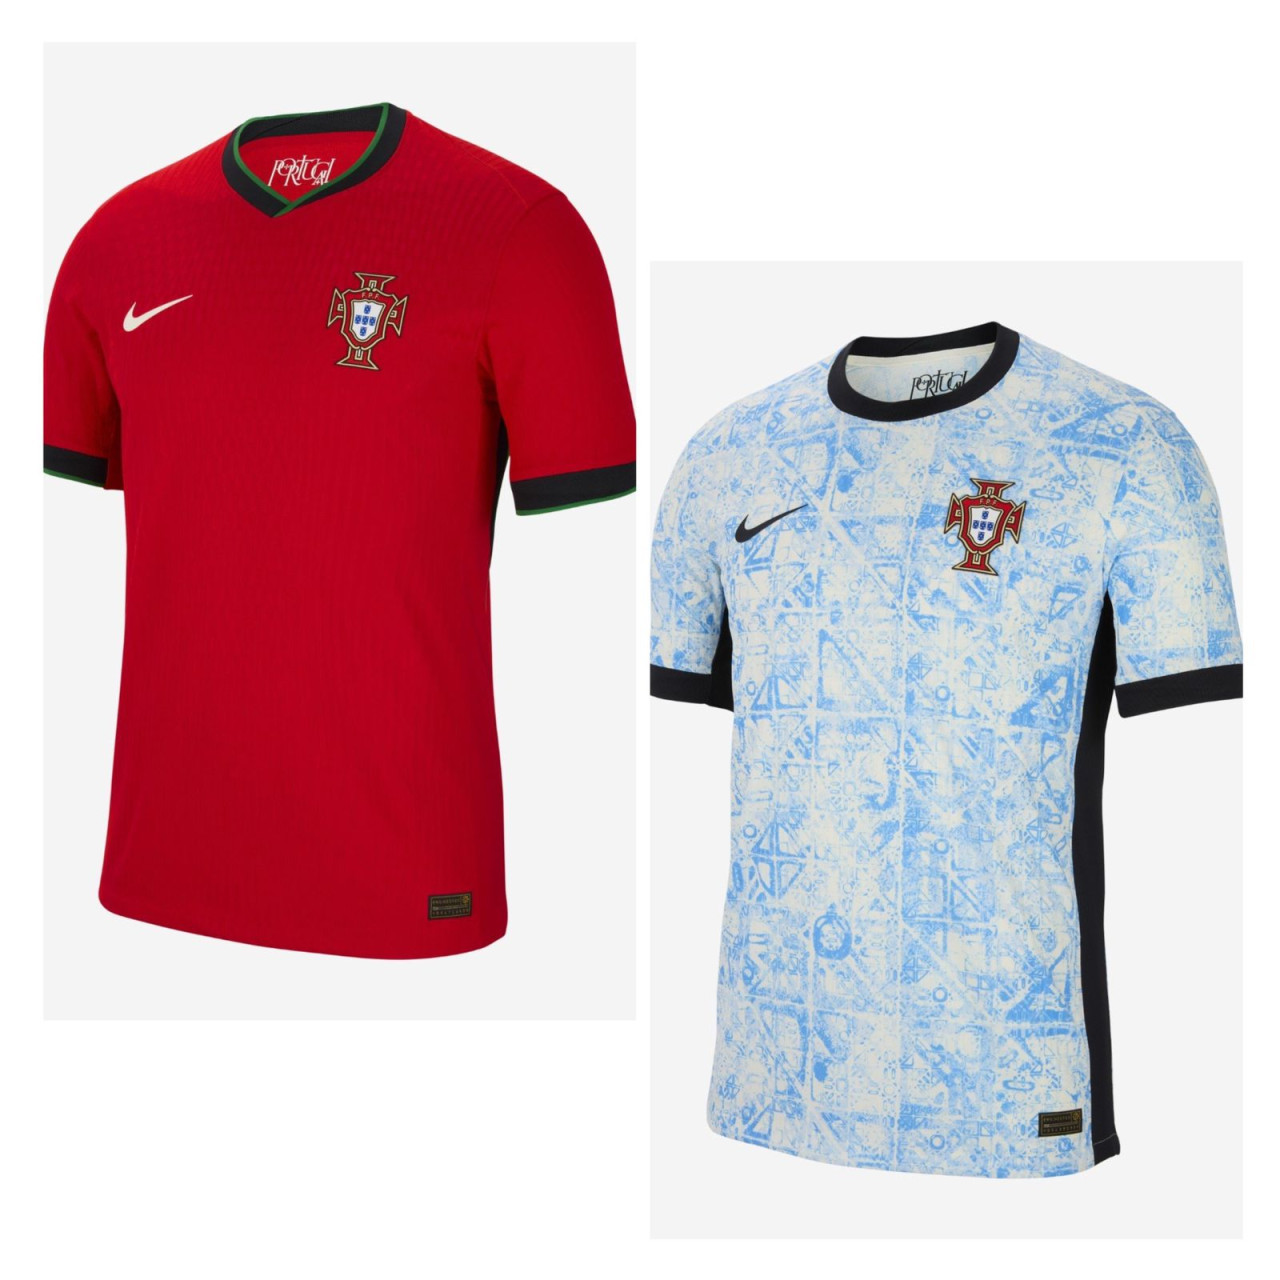 Camiseta titular y suplente de Portugal.